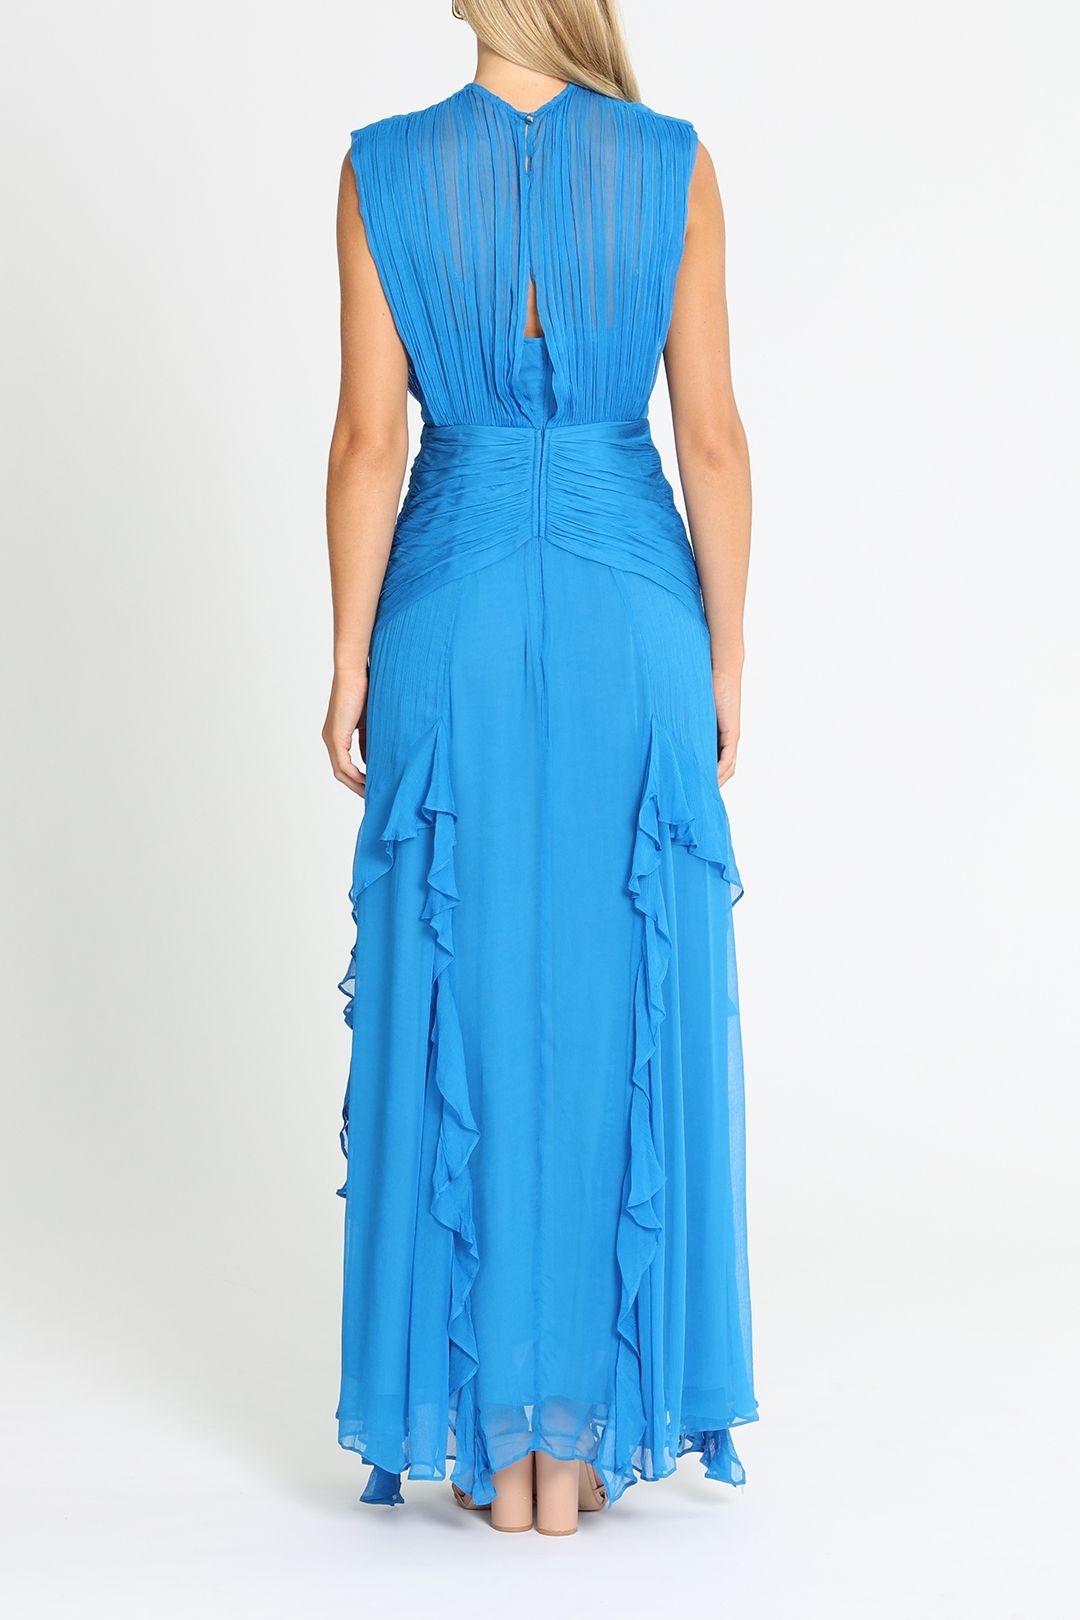 Shona Joy Leilani Sleeveless Maxi Dress Blue Ruched